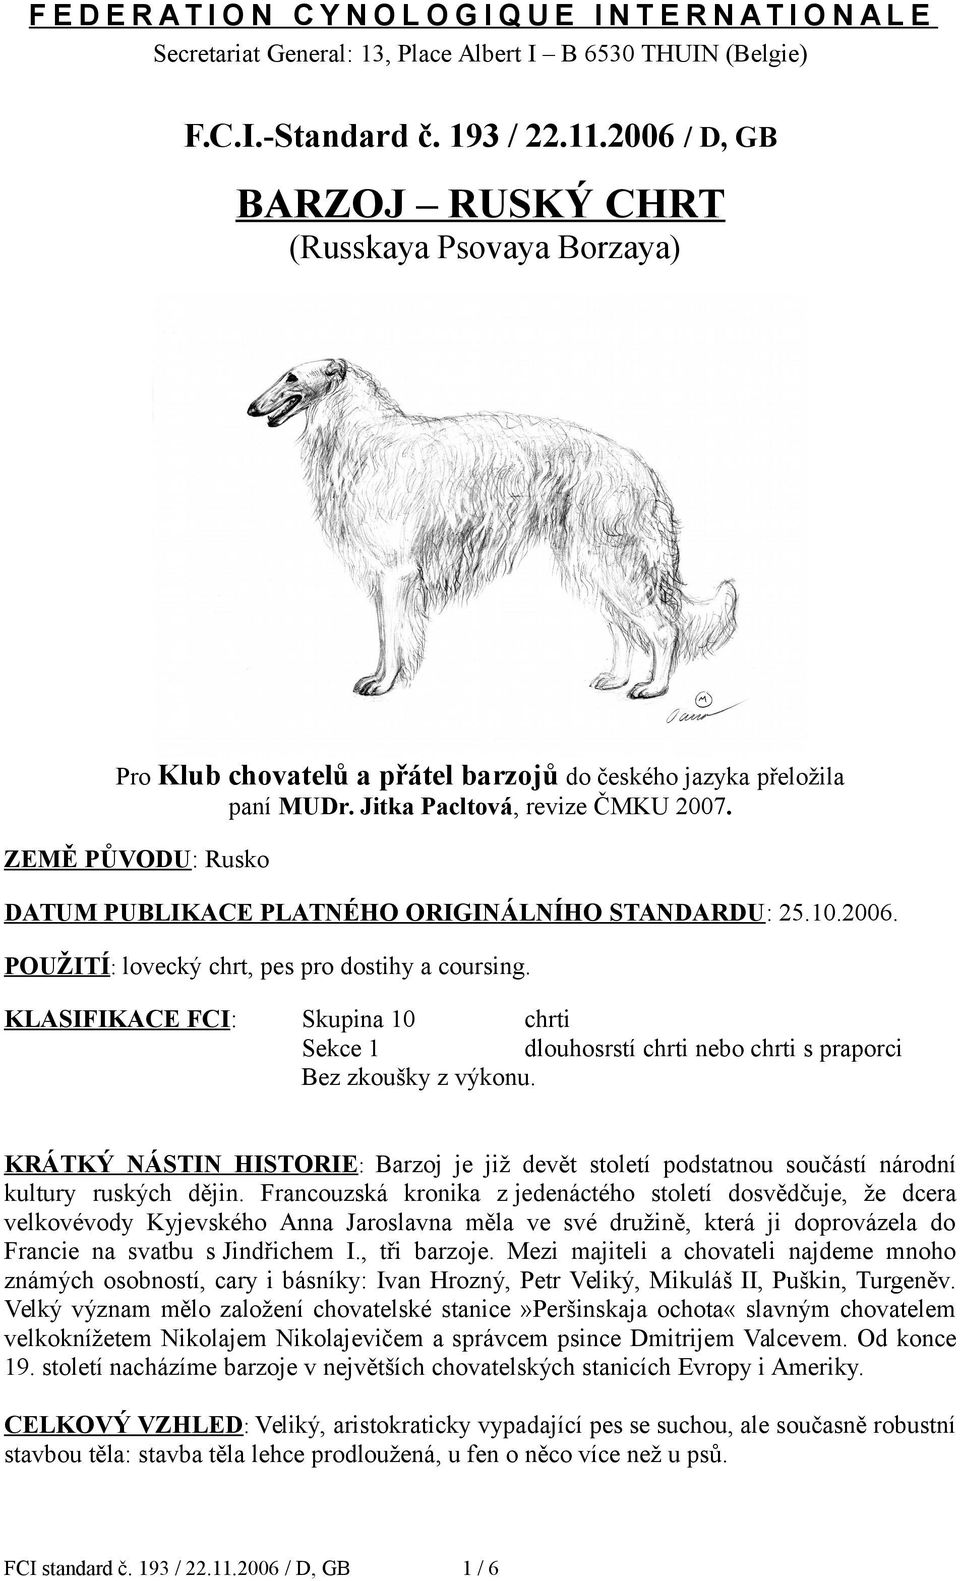 ZEMĚ PŮVODU: Rusko DATUM PUBLIKACE PLATNÉHO ORIGINÁLNÍHO STANDARDU: 25.10.2006. POUŽITÍ: lovecký chrt, pes pro dostihy a coursing.